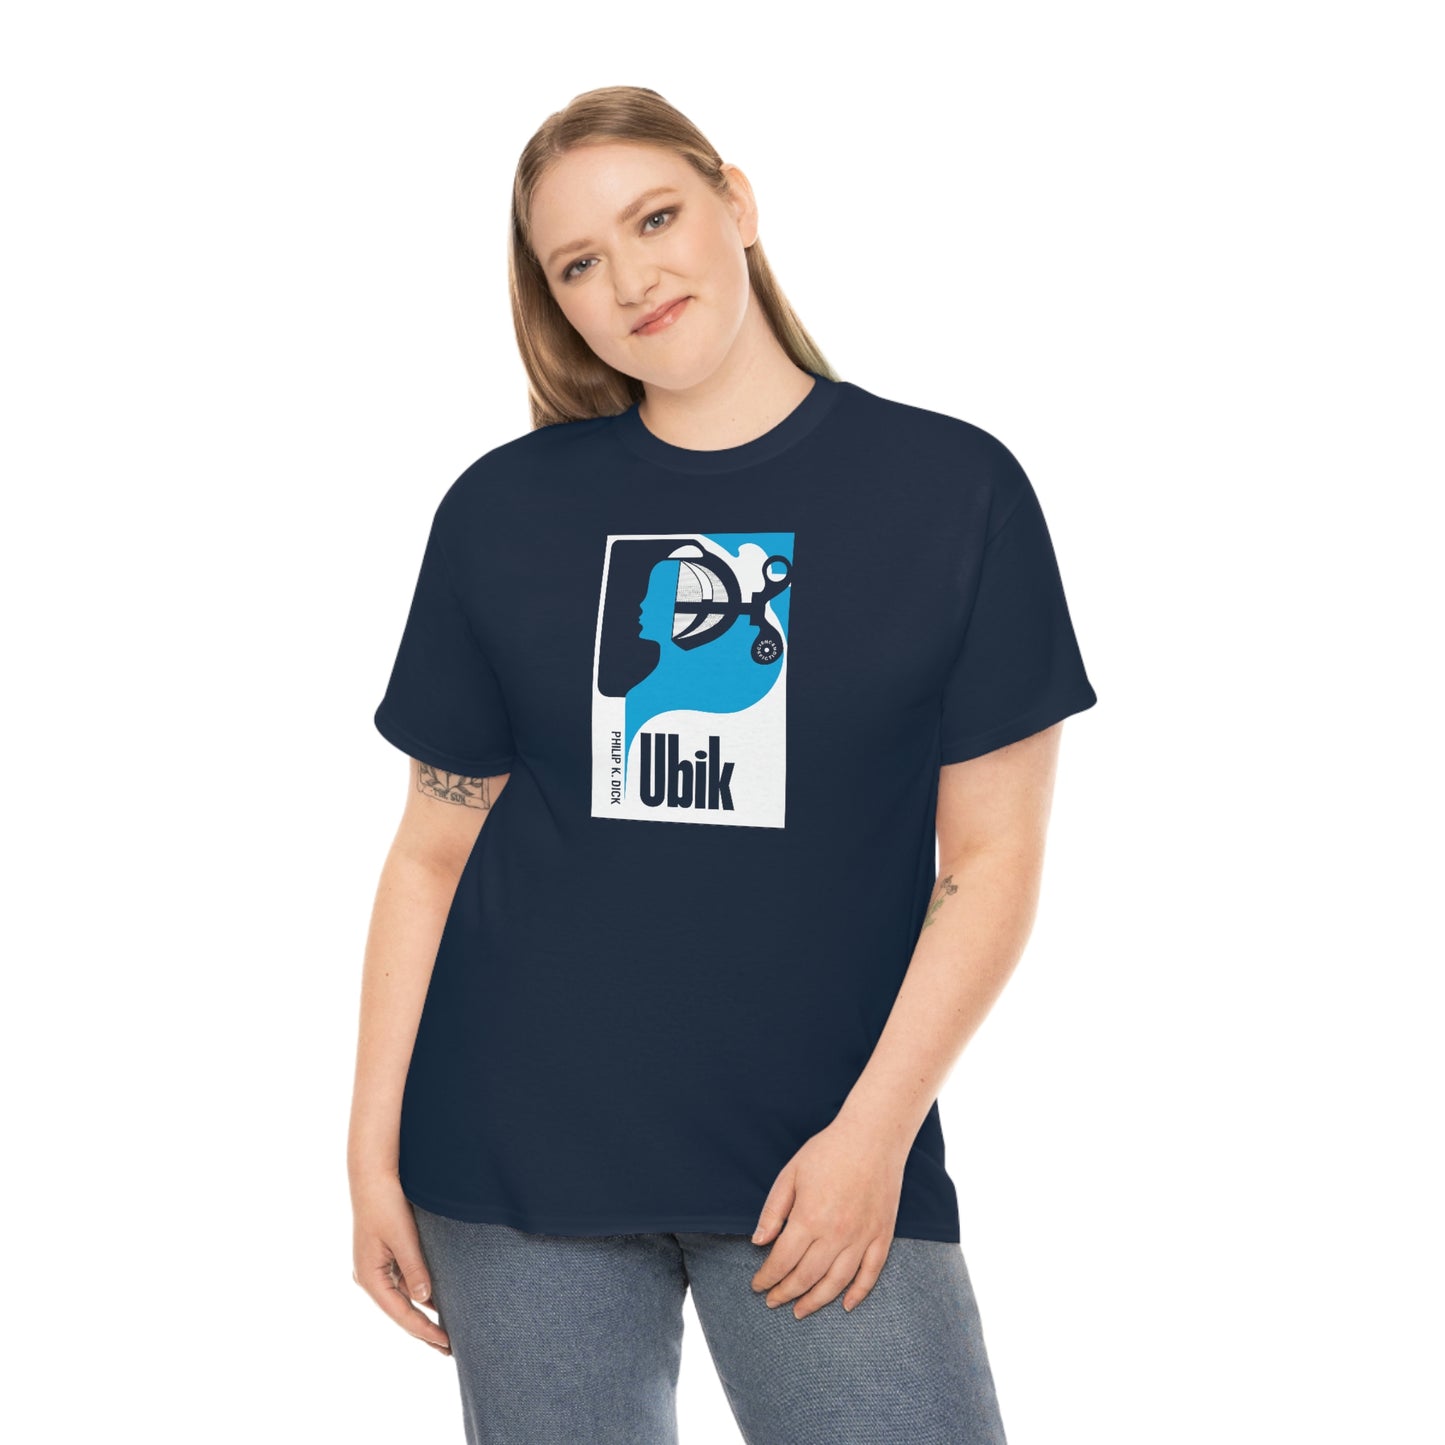 Ubik T-Shirt